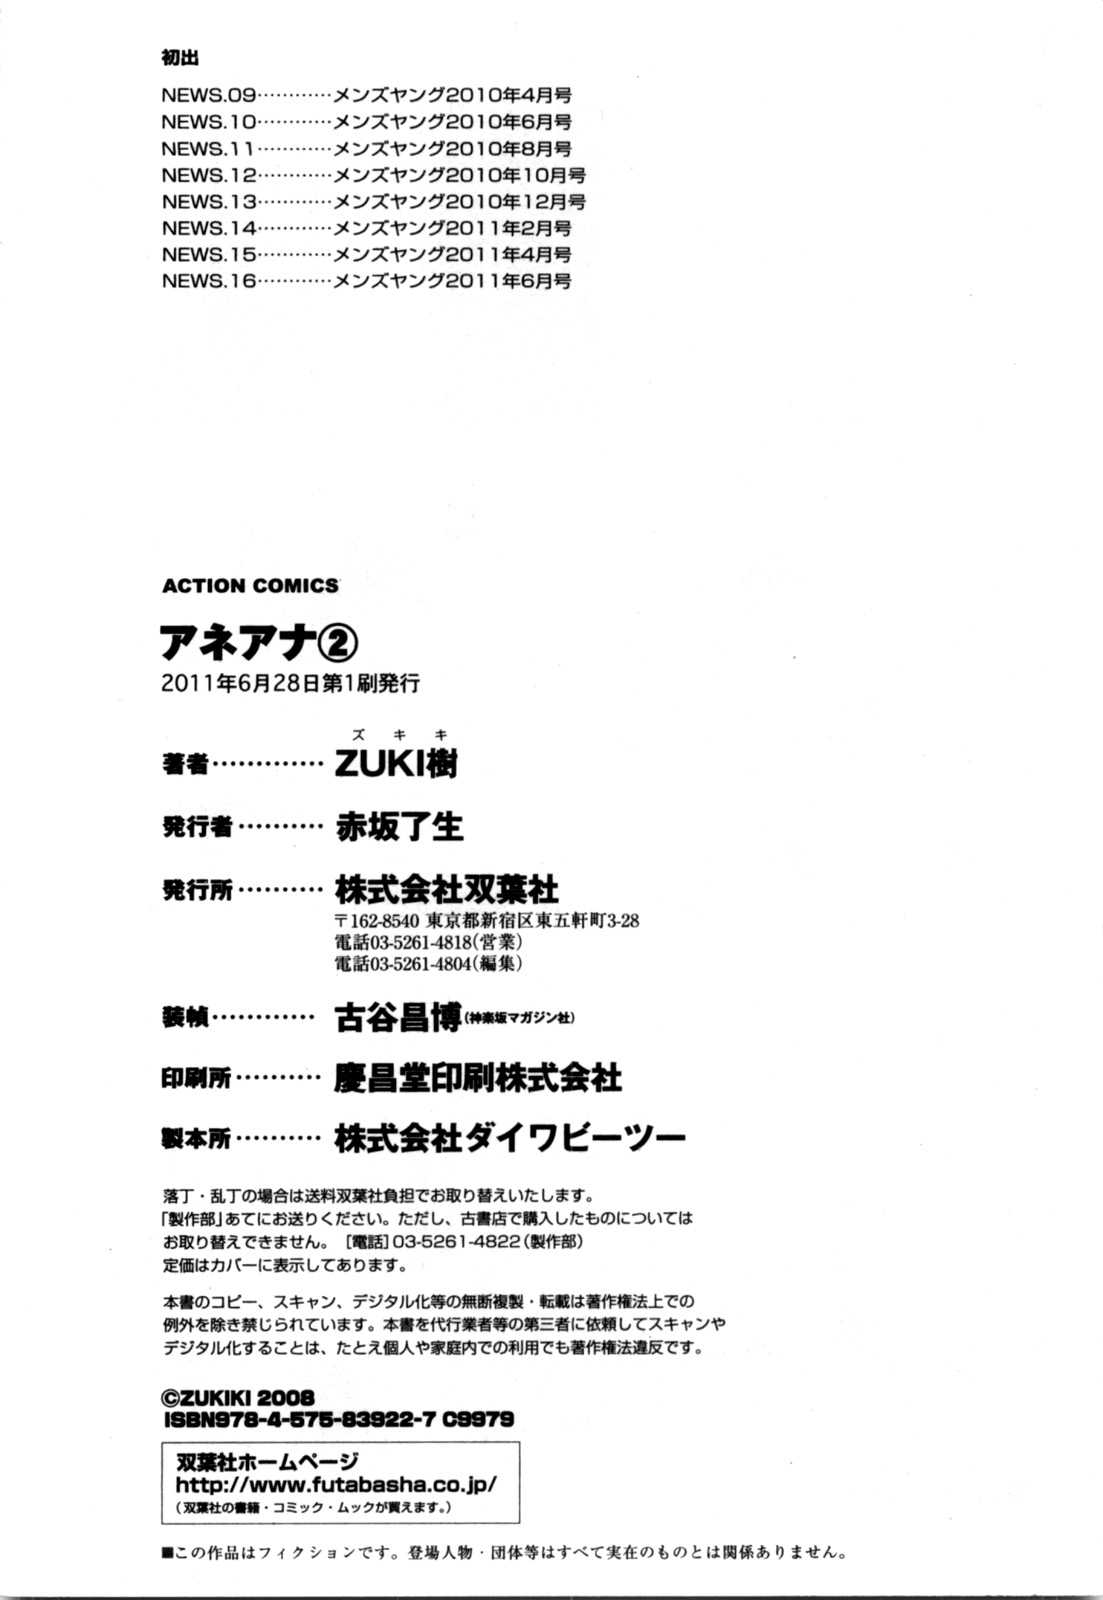 [Zukiki] Ane Ana Vol.2 [ZUKI樹] アネアナ 第02巻 [2011-06-28]